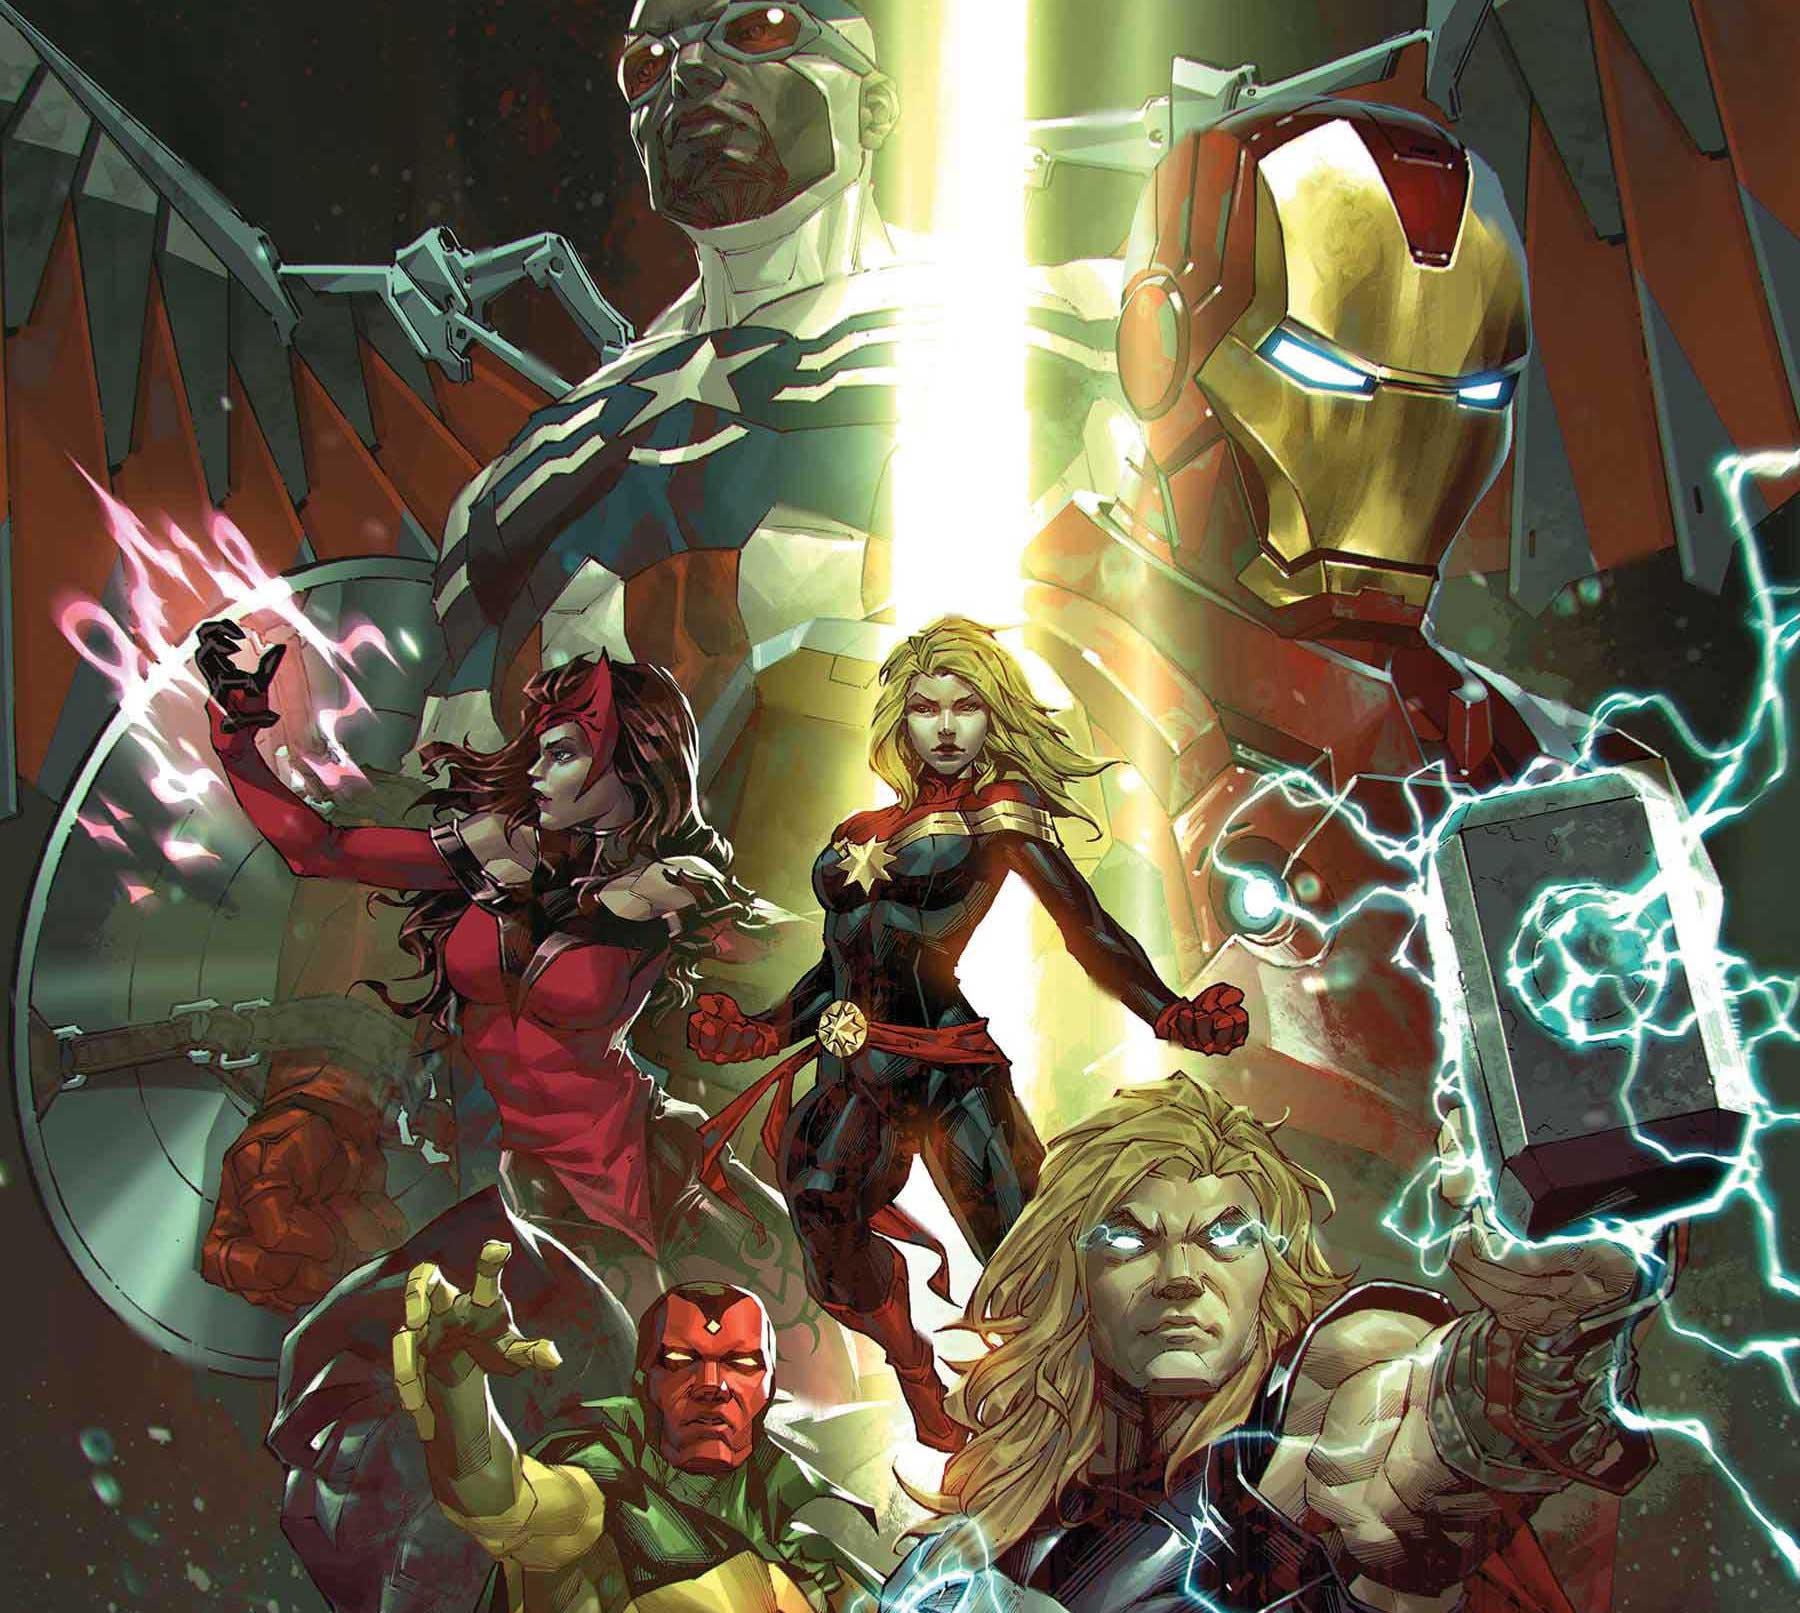 Kael Ngu's 'Avengers' #1 variant beams down your favorite Marvel heroes